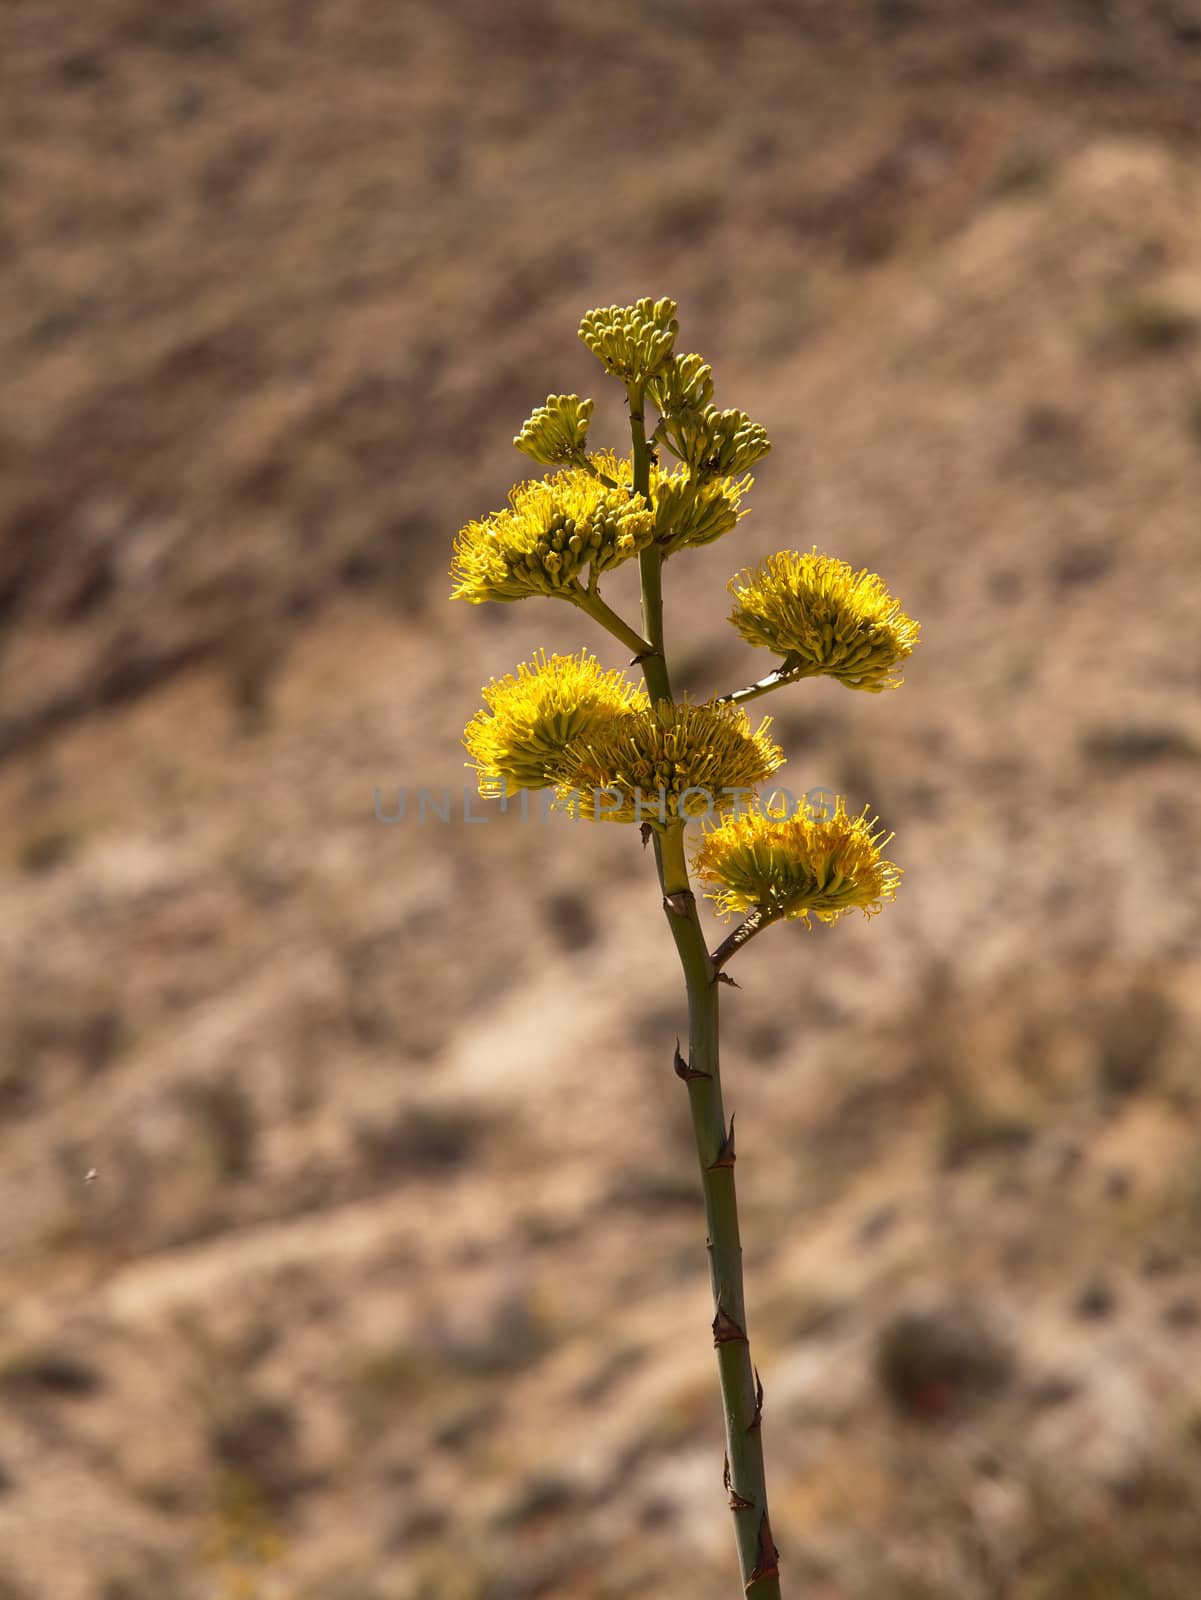 Century plants bloom in desert by steheap